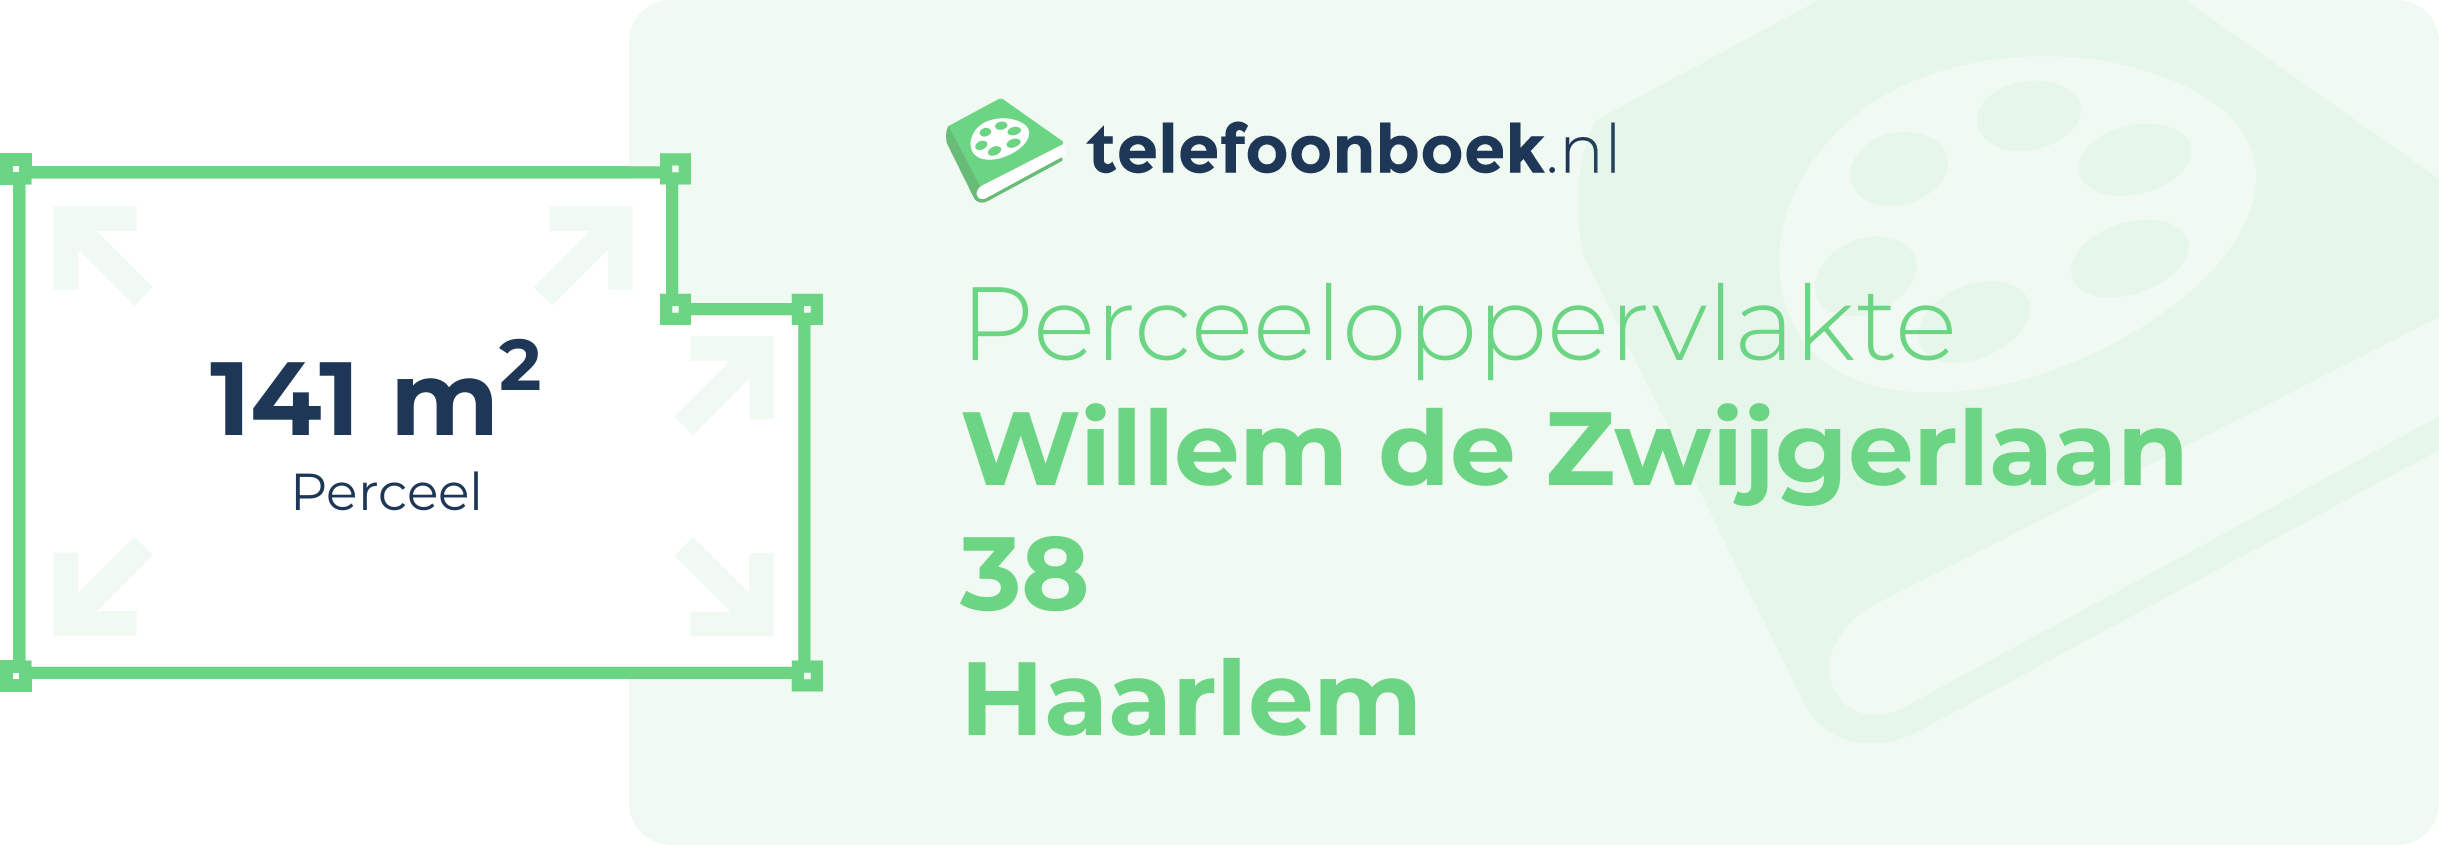 Perceeloppervlakte Willem De Zwijgerlaan 38 Haarlem